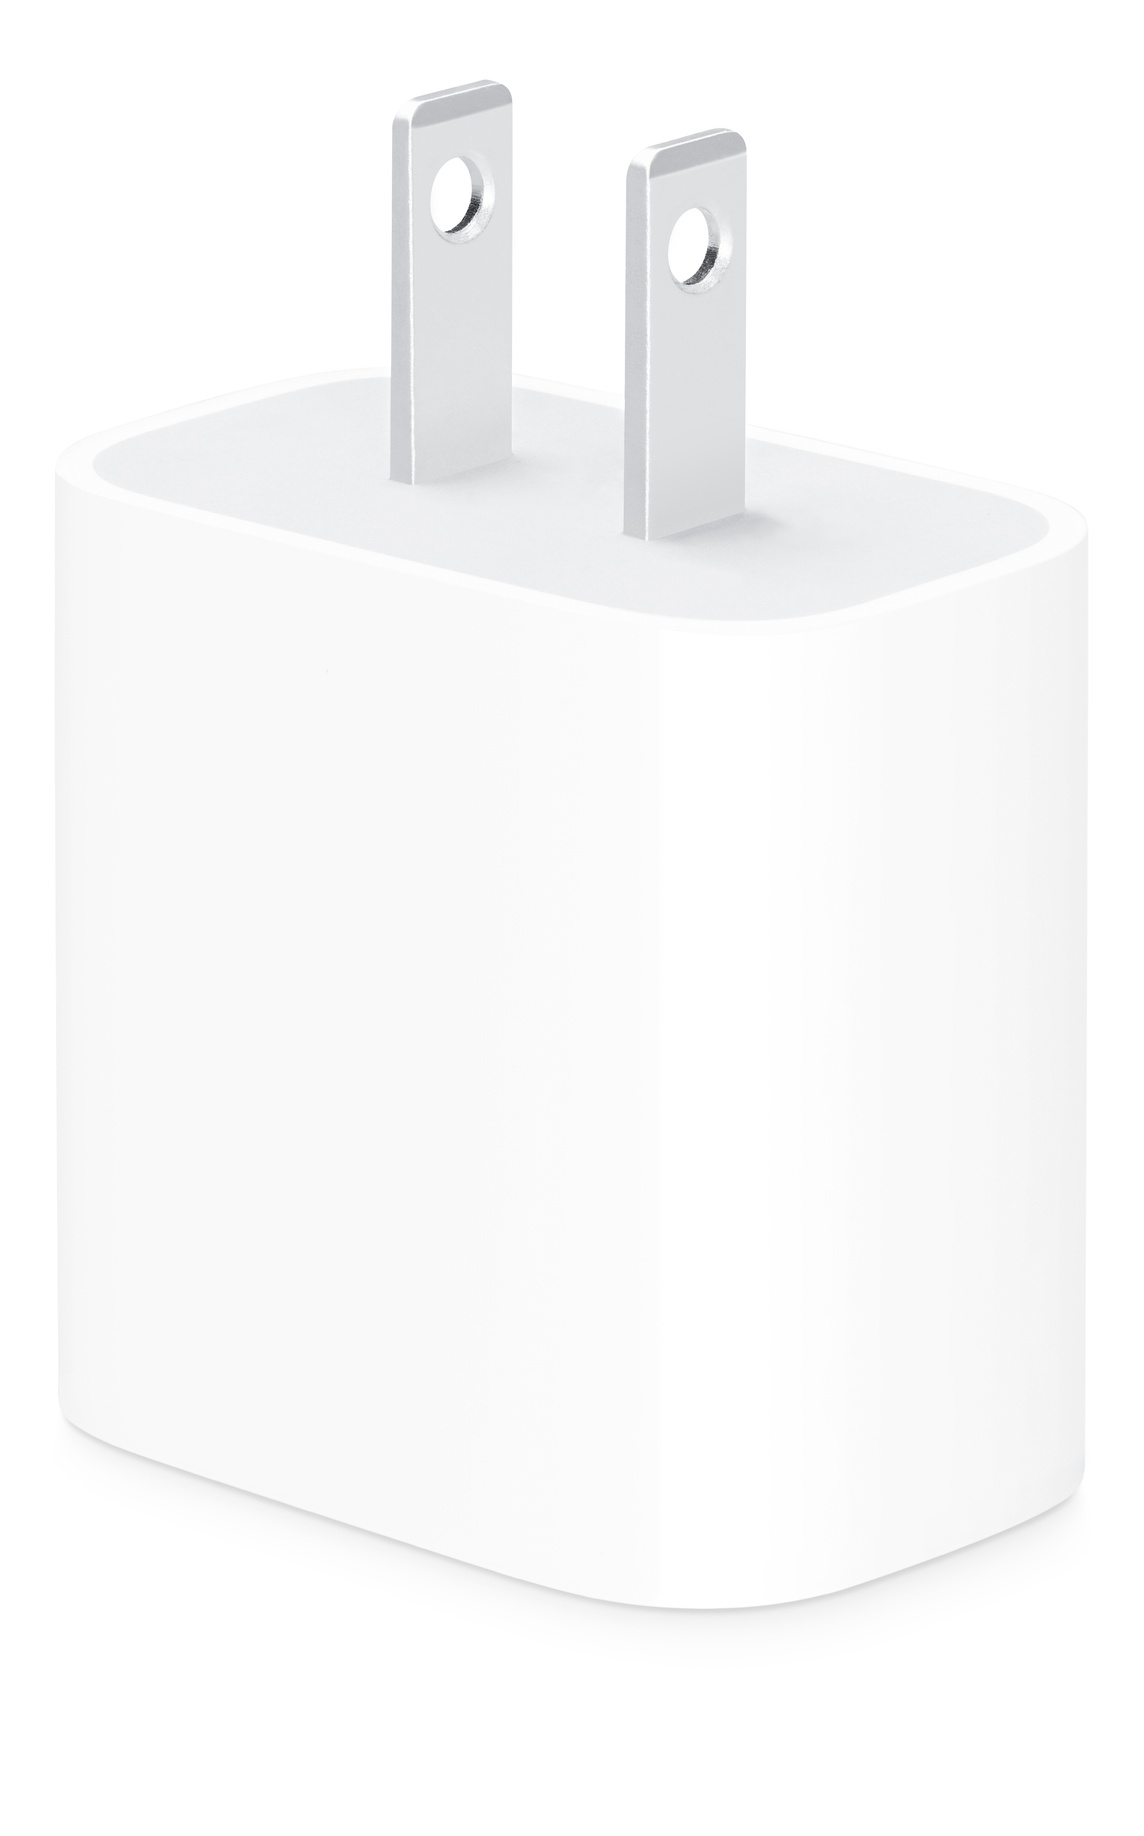 El adaptador de corriente USB-C de 20 watts de Apple (con conector tipo A) te permite cargar tu dispositivo de manera rápida y eficiente en cualquier lugar.